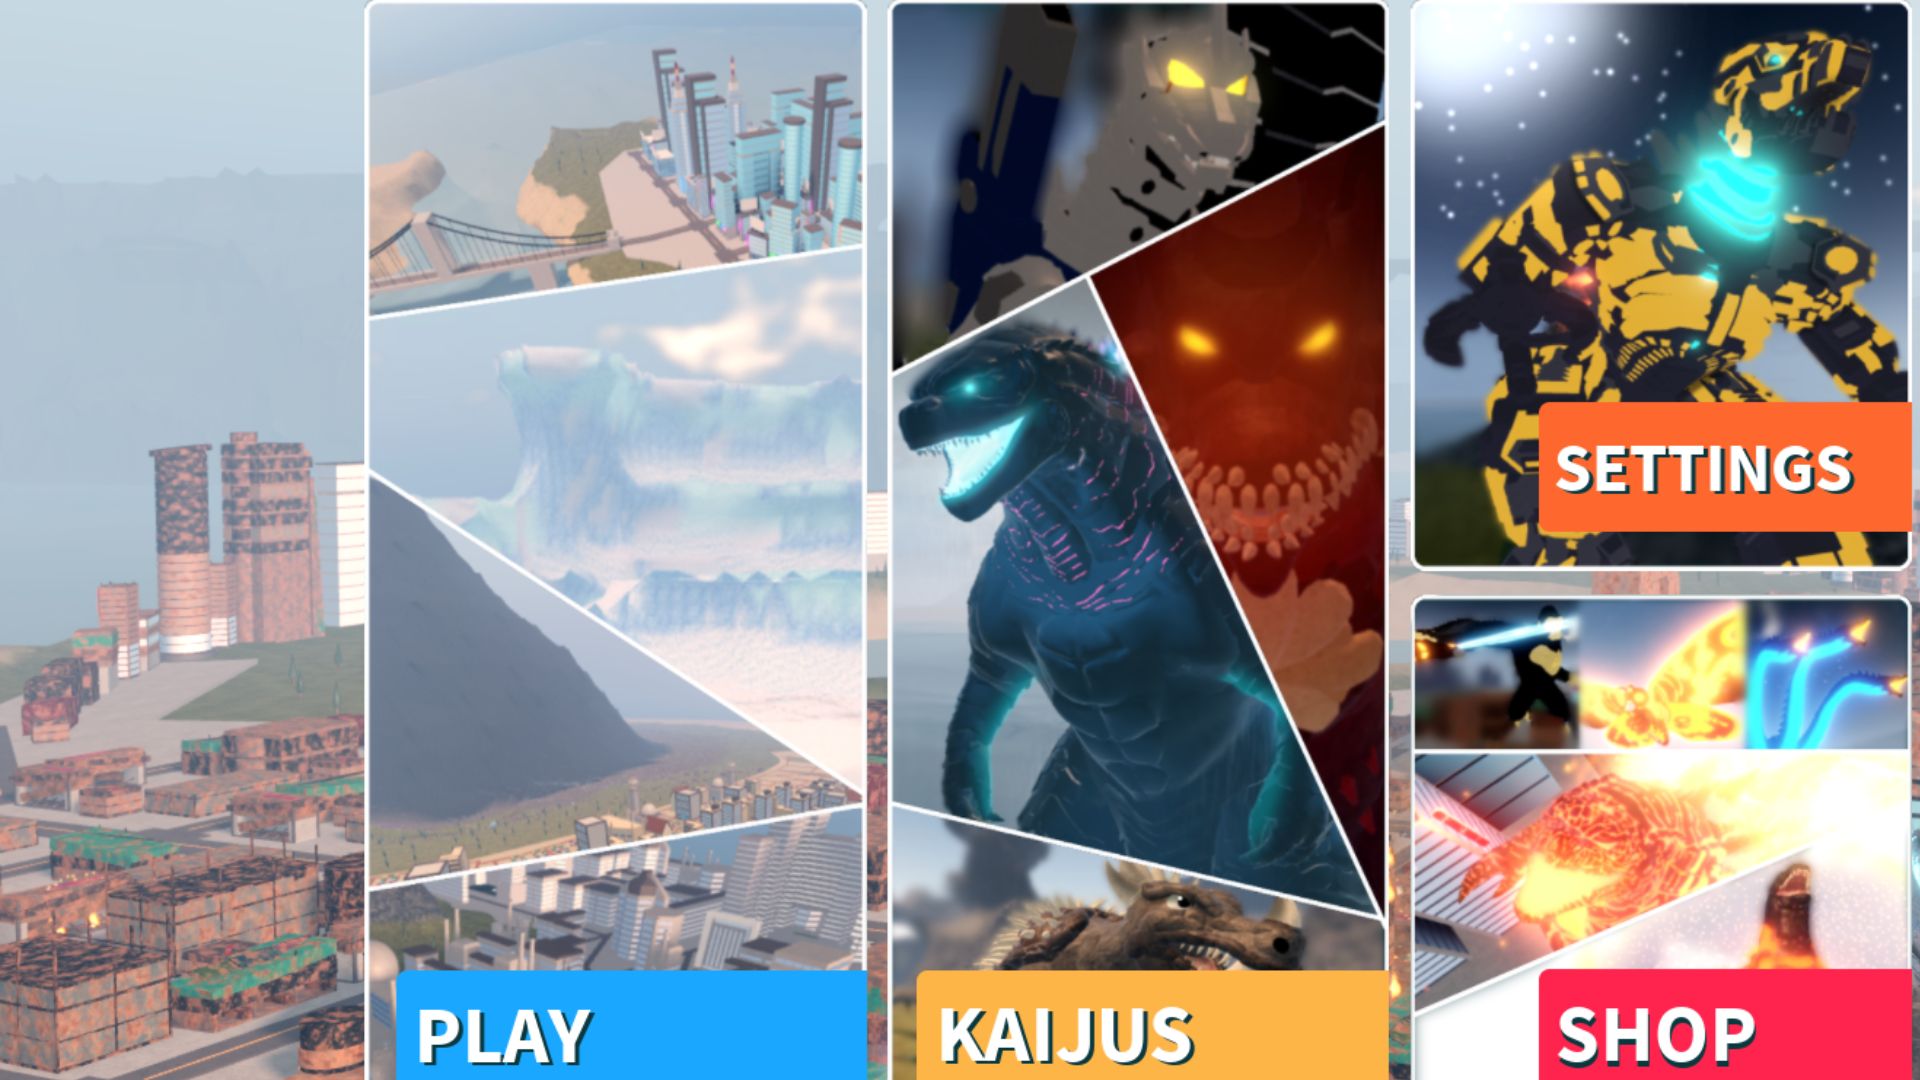 Roblox ゲーム Kaiju Universe のメニュー。  4 つの写真があります。1 つは風景の 1 つで、下部には「play」という言葉があり、ゴジラに似た怪獣のコミック スタイルのマッシュアップには下部に「kaijus」という言葉があり、設定メニューはすべて a の前にあります。大きな仮想風景。